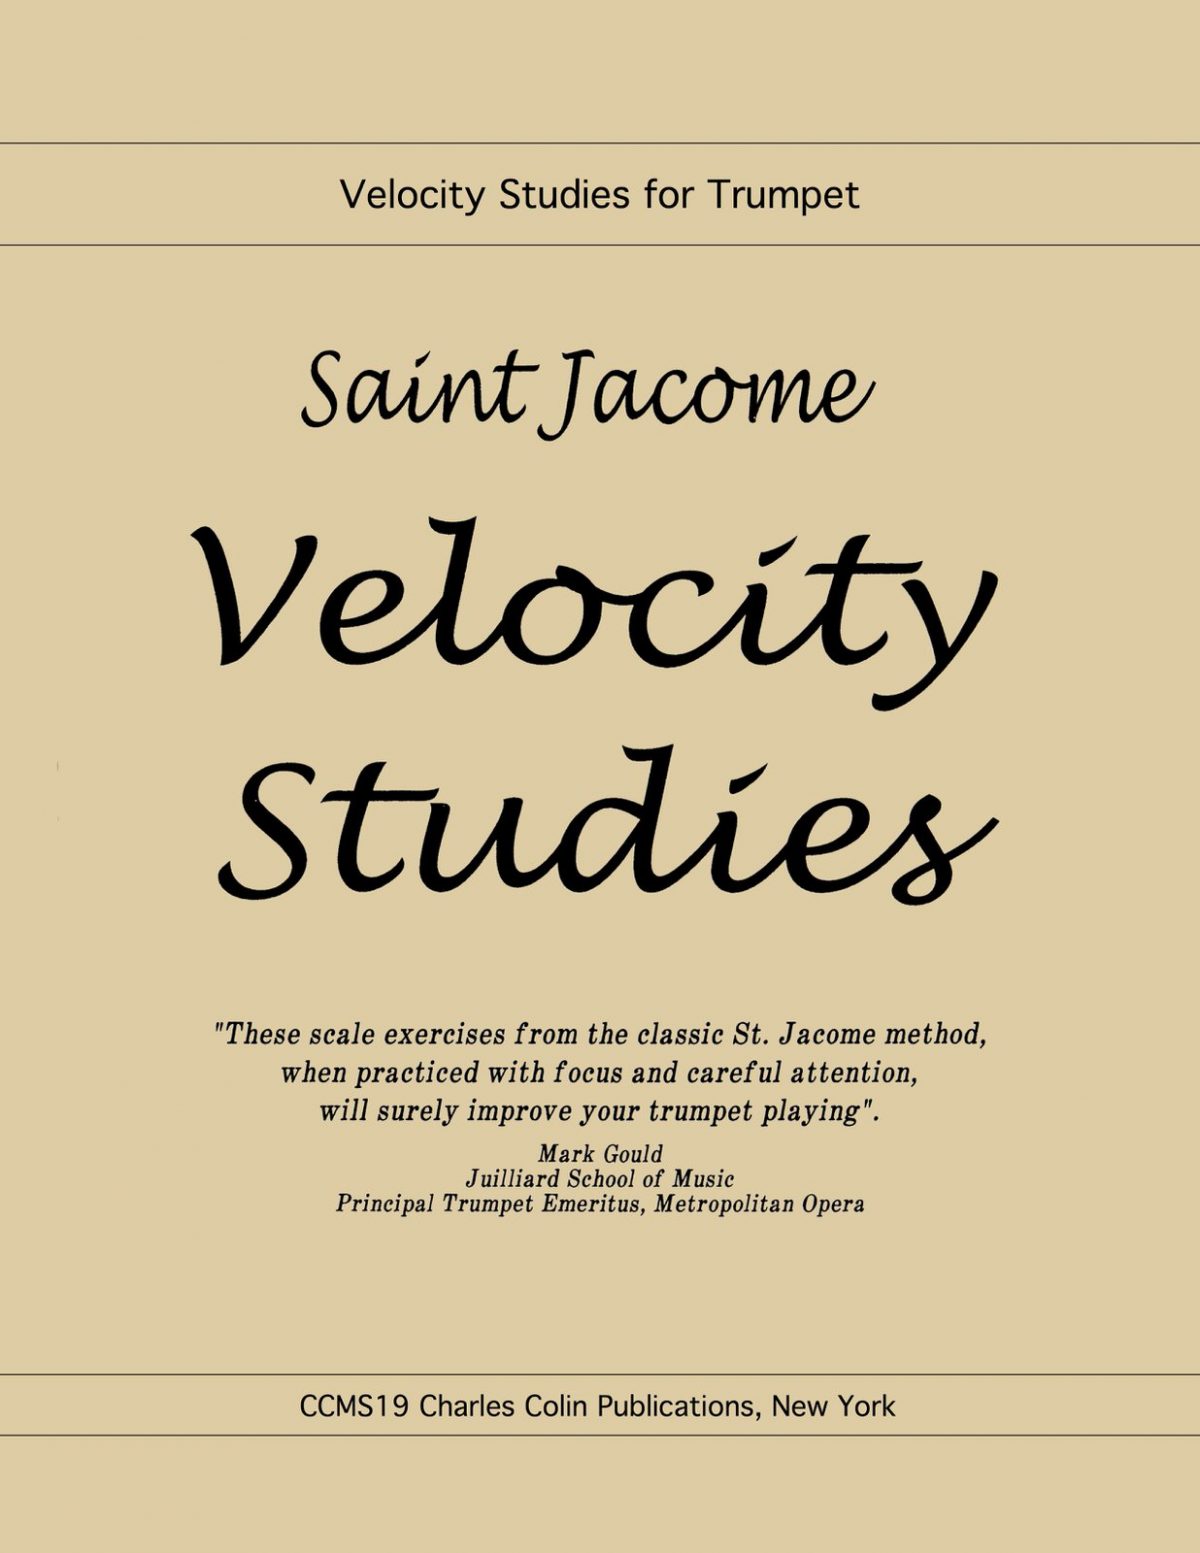 Saint-Jacome Velocity Studies